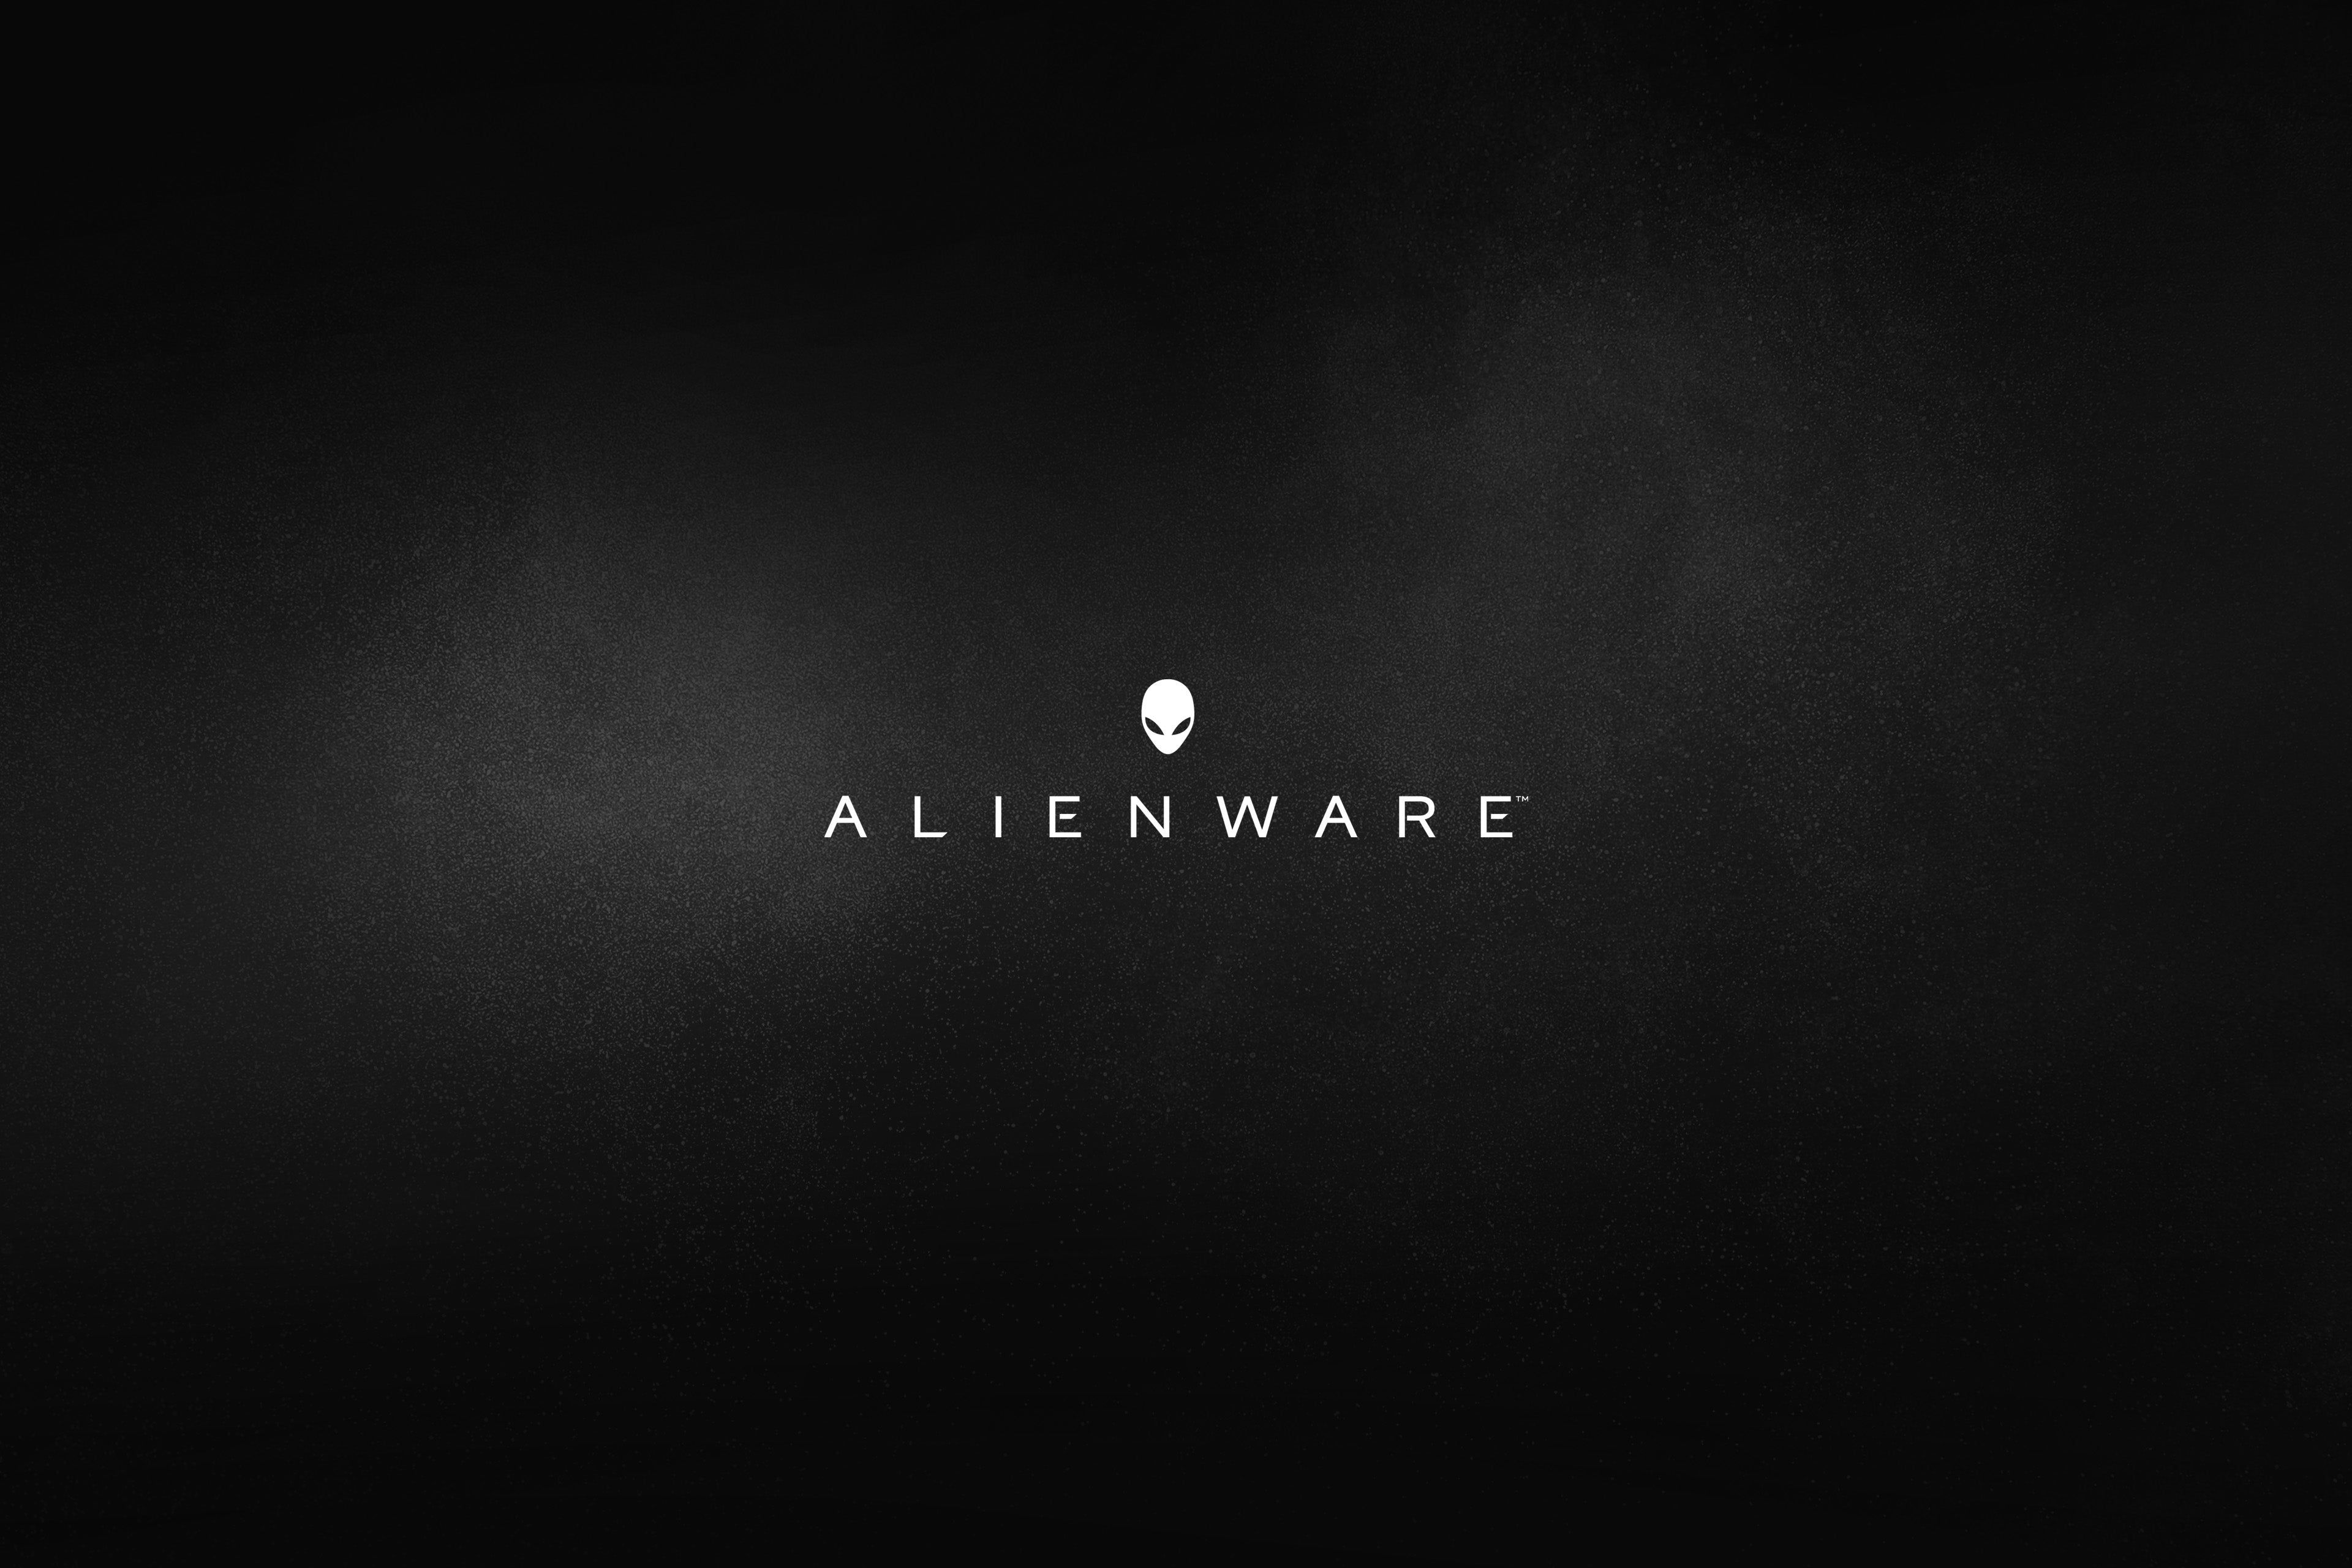 General 3840x2560 Alienware Dell simple background minimalism dark background logo brand